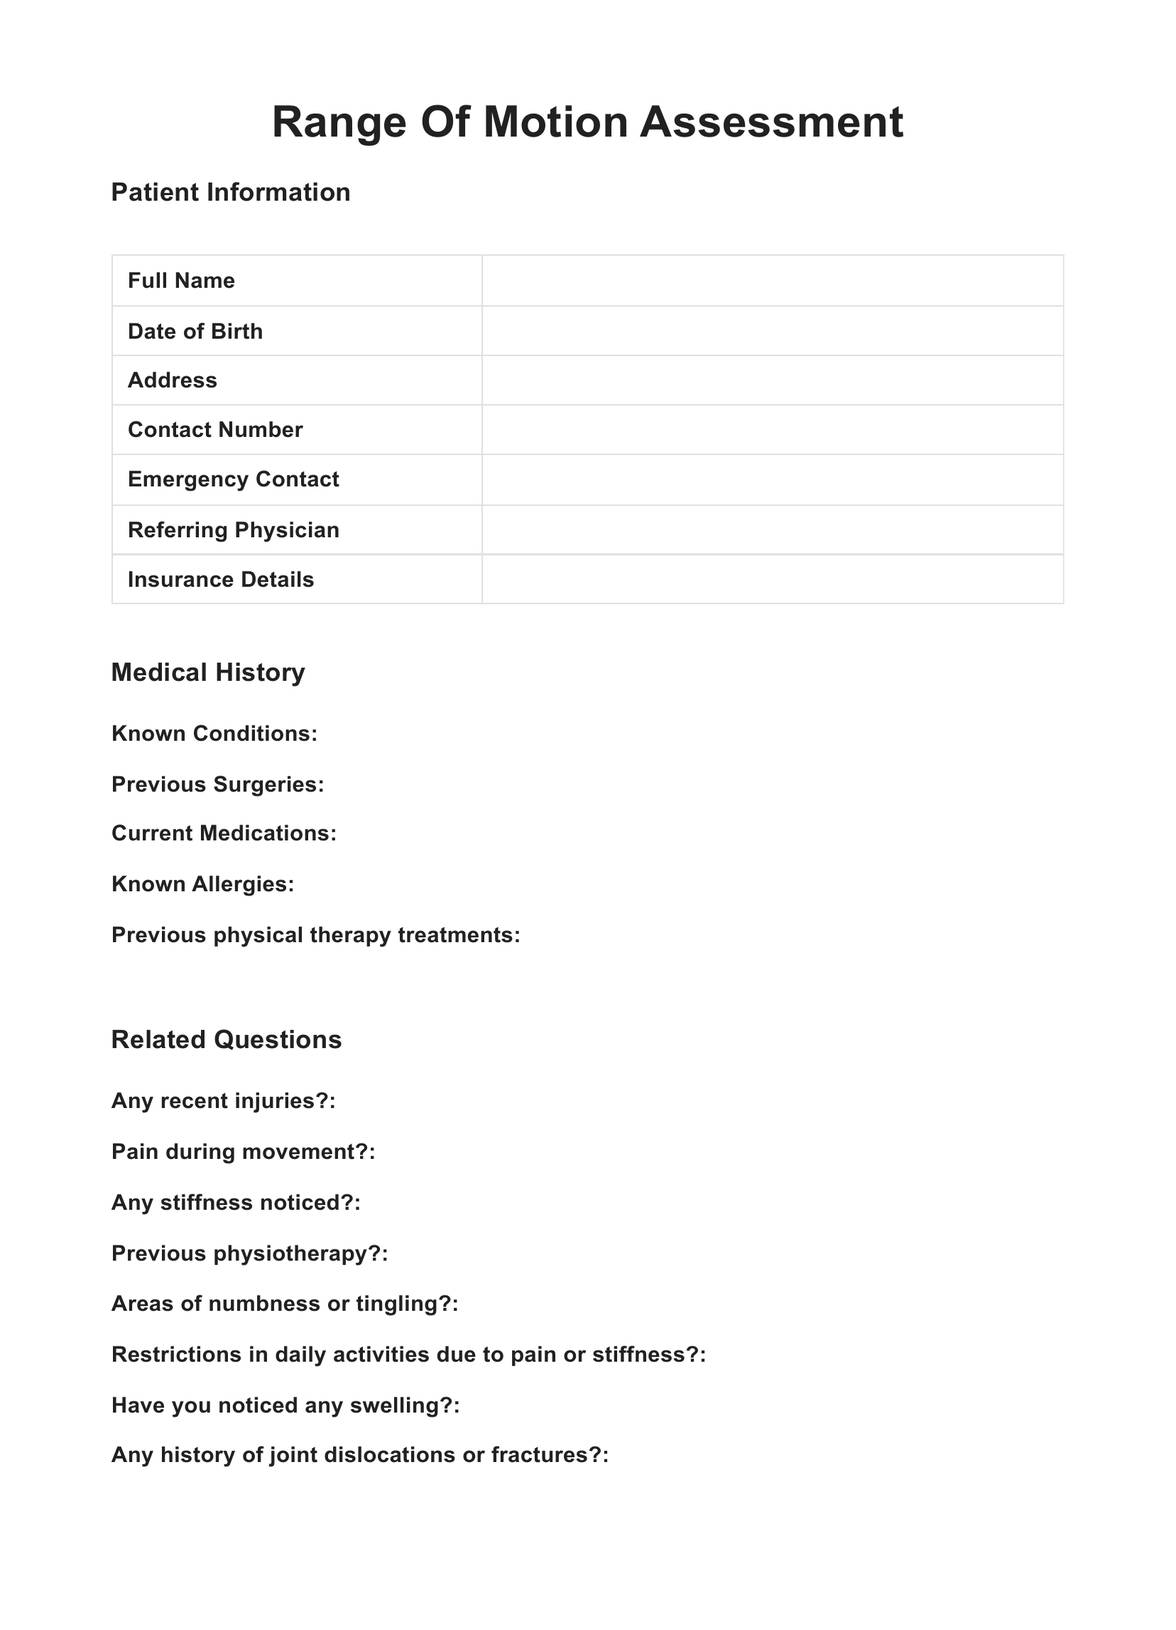 Range Of Motion Assessment PDF Example